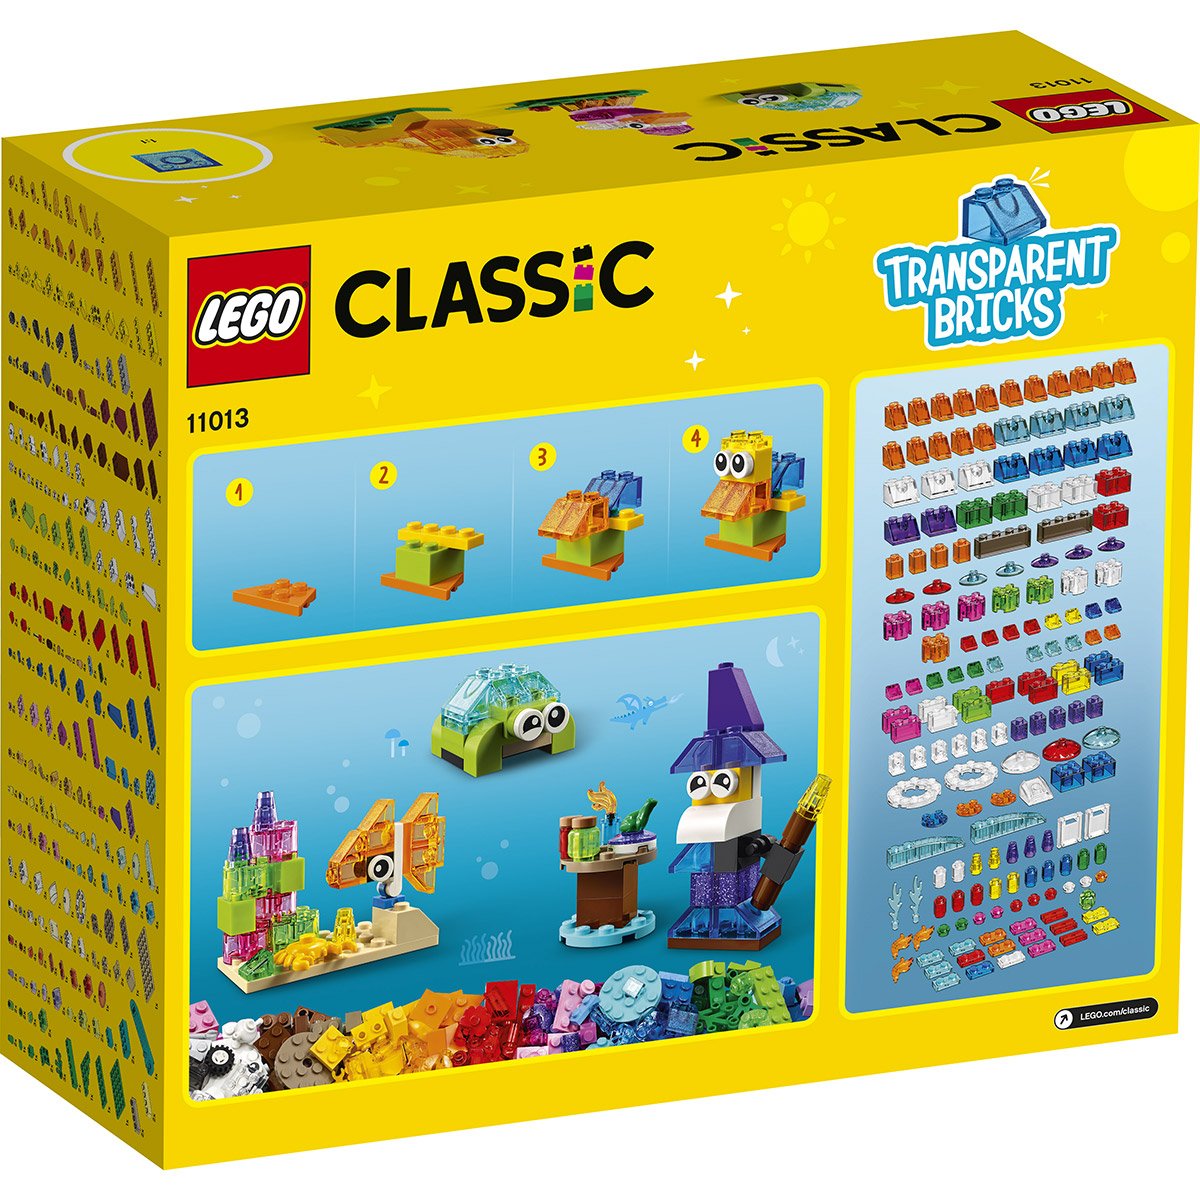 Briques transparentes créatives LEGO Classic 11013 - La Grande Récré